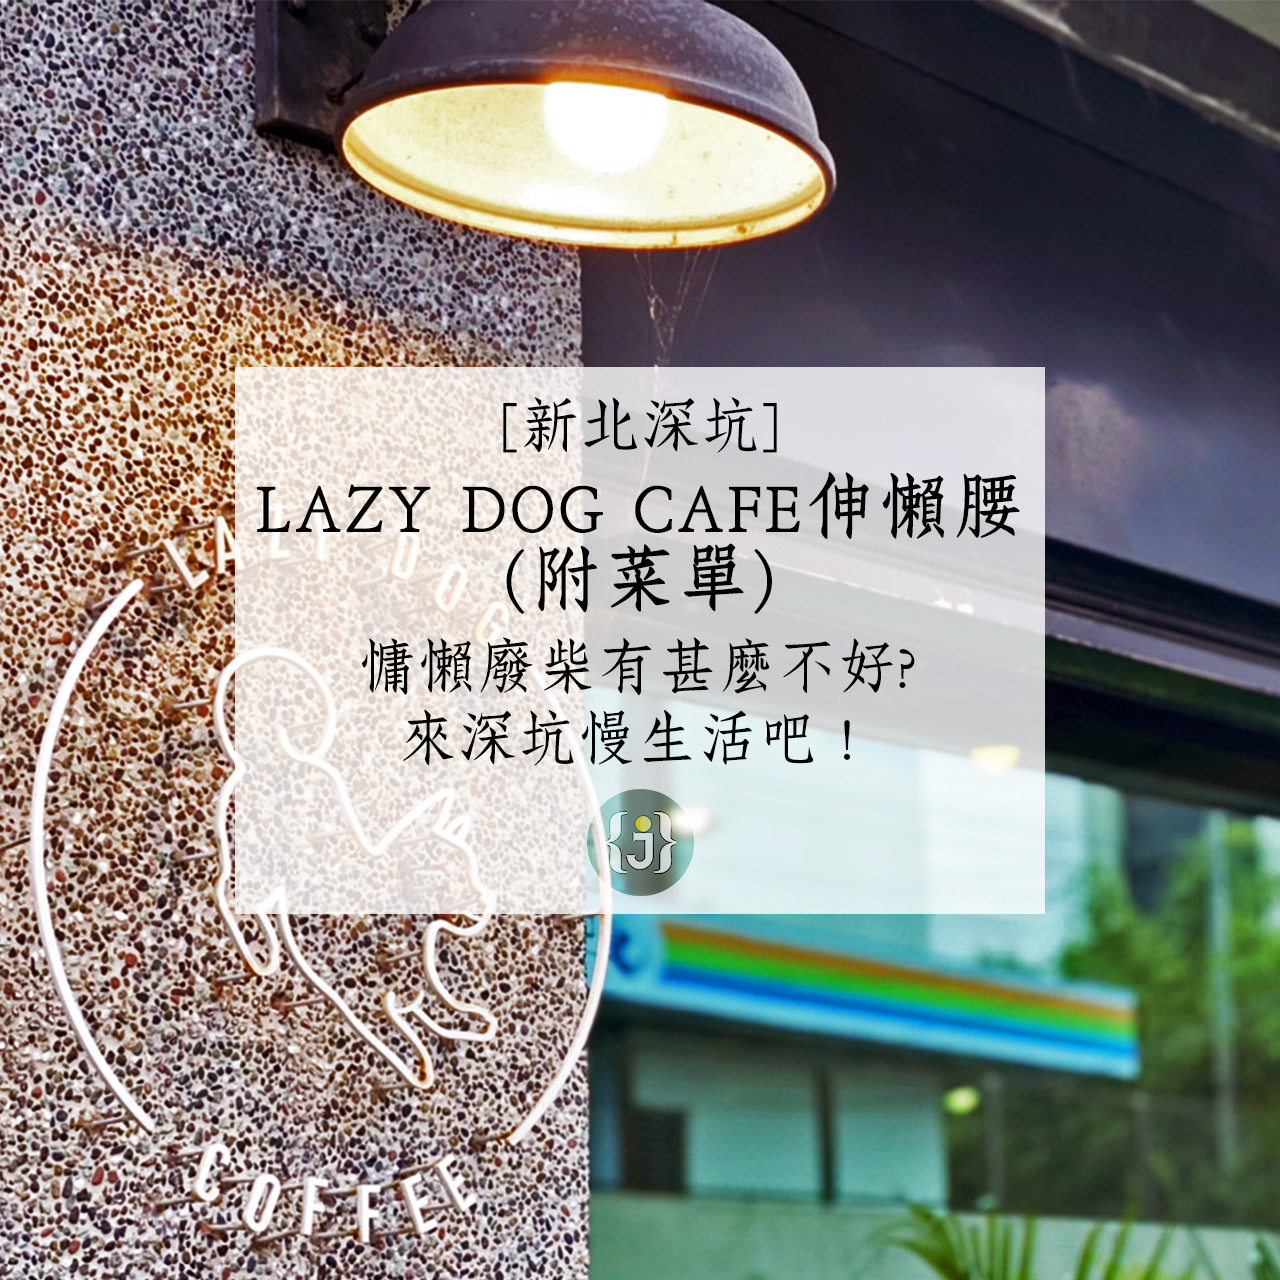 【新北深坑】LAZY DOG CAFE伸懶腰附菜單慵懶廢柴有甚麼不好來深坑慢生活吧！